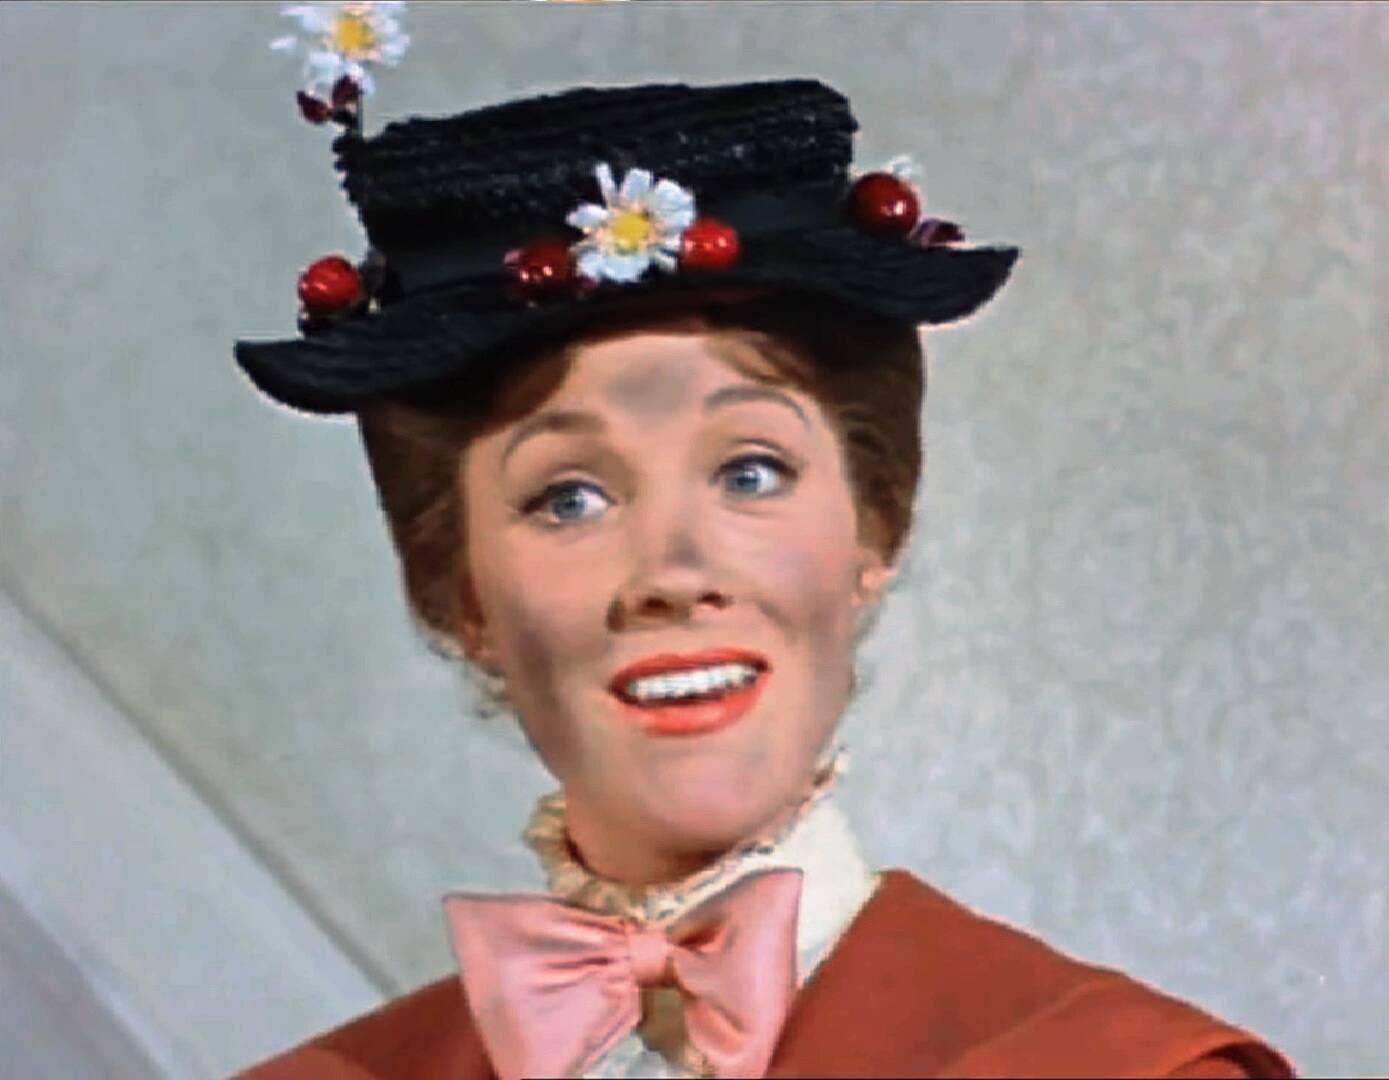 Immagine di Mary Poppins, tutte le curiosità sul film della tata più magica di Disney